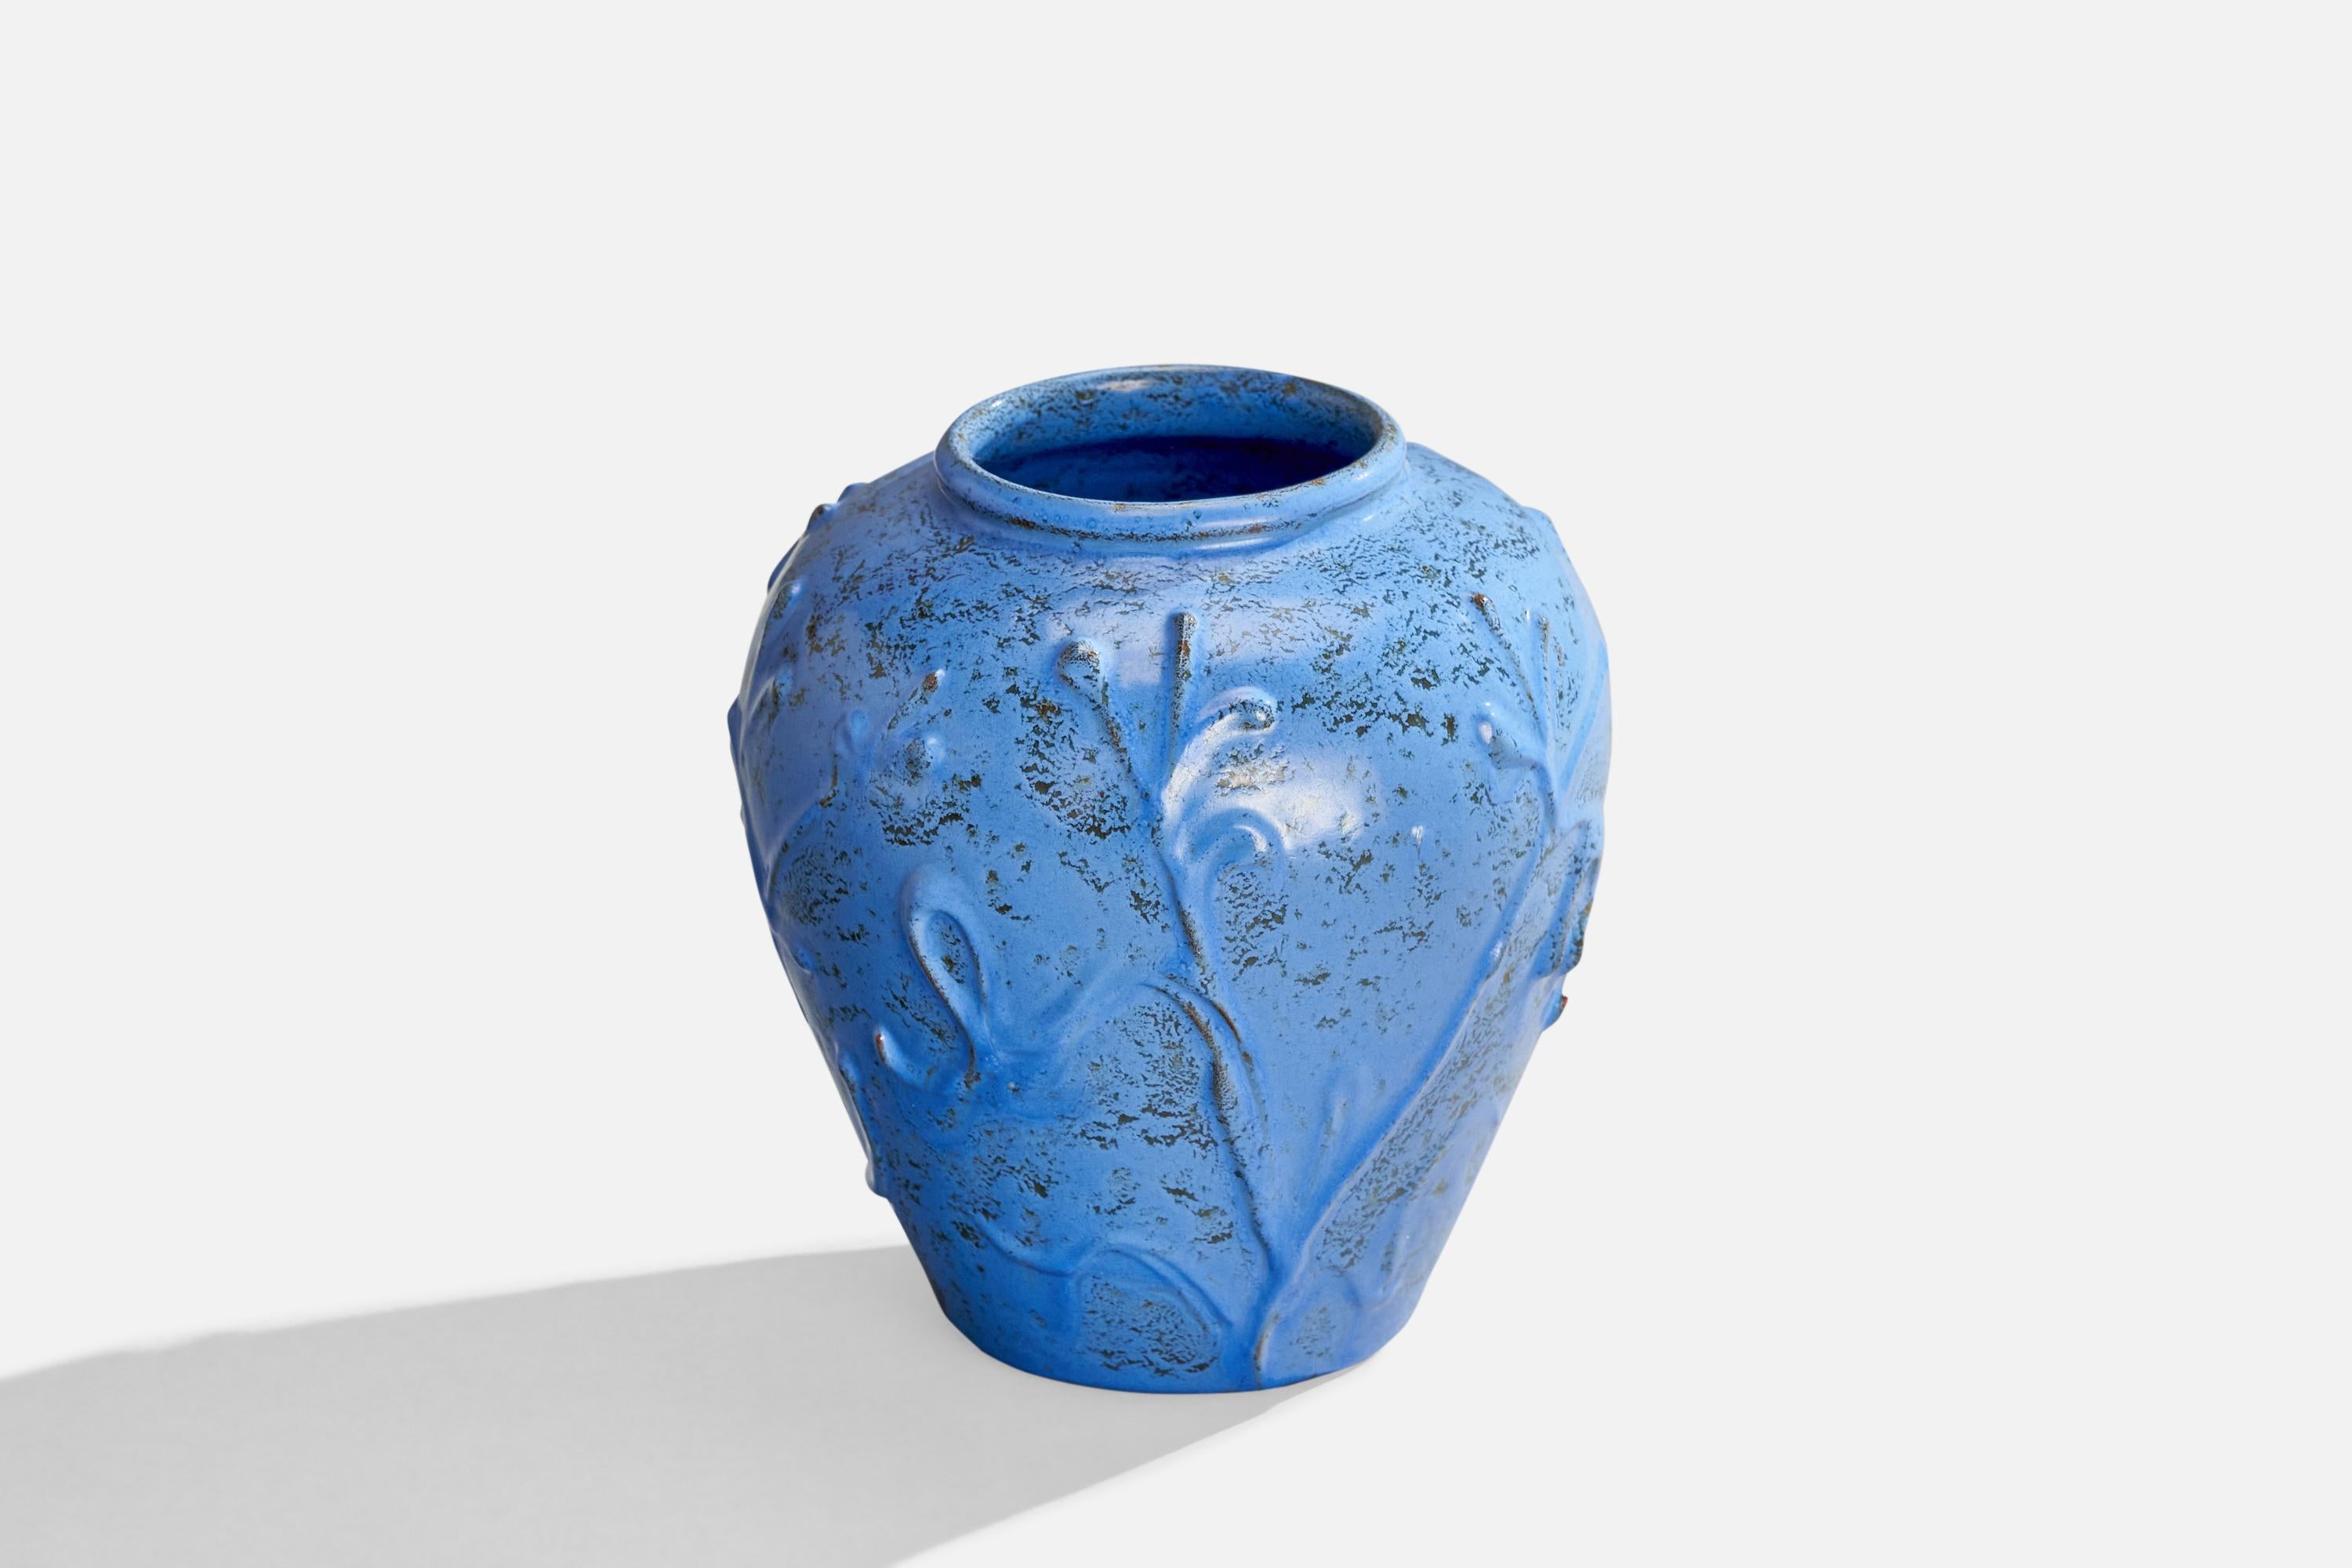 A blue-glazed ceramic vase designed and produced by Nittsjö, Sweden, 1930s.